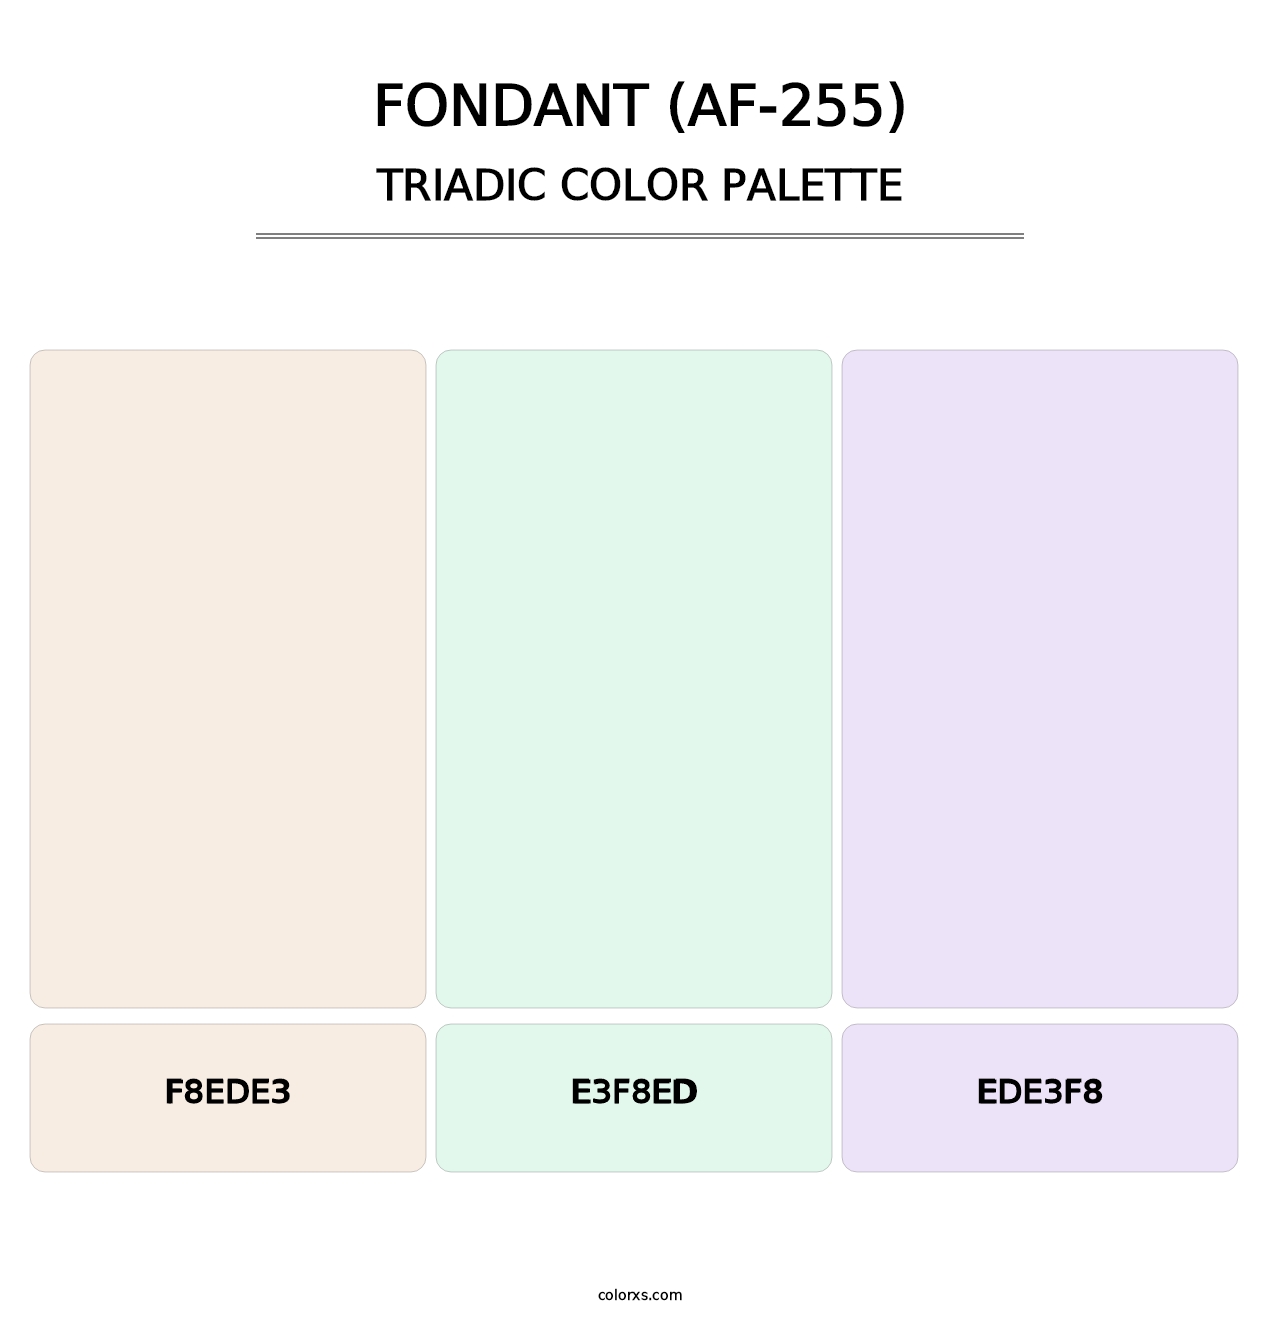 Fondant (AF-255) - Triadic Color Palette